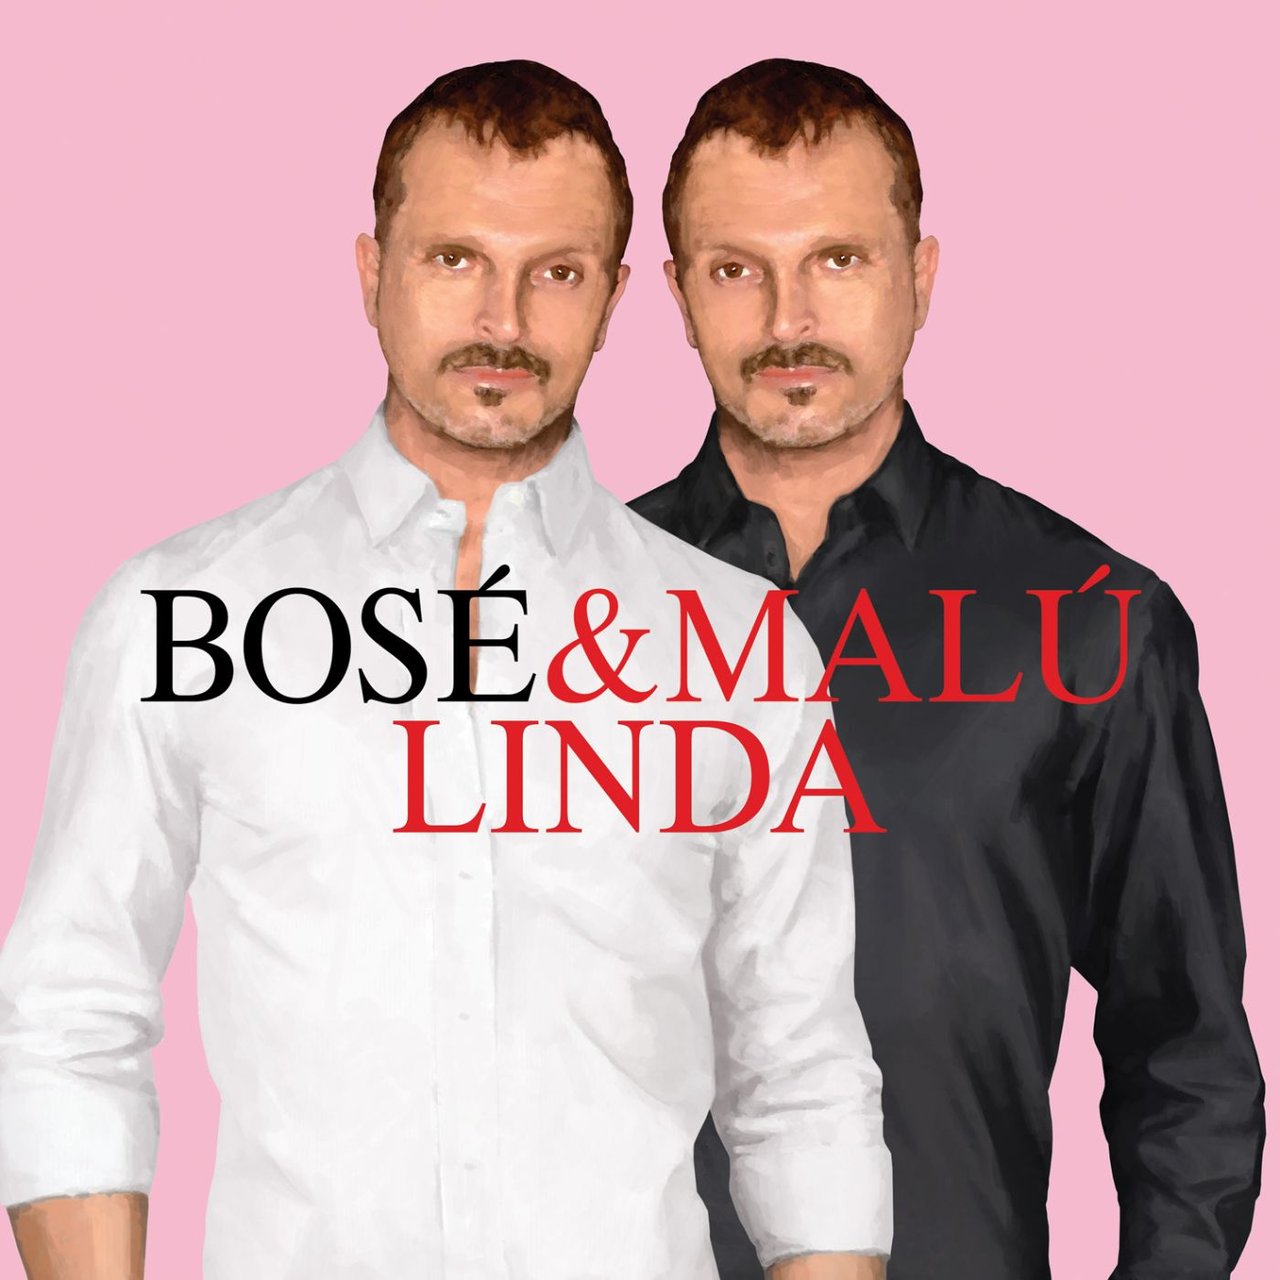 Miguel Bosé & Malú Linda cover artwork